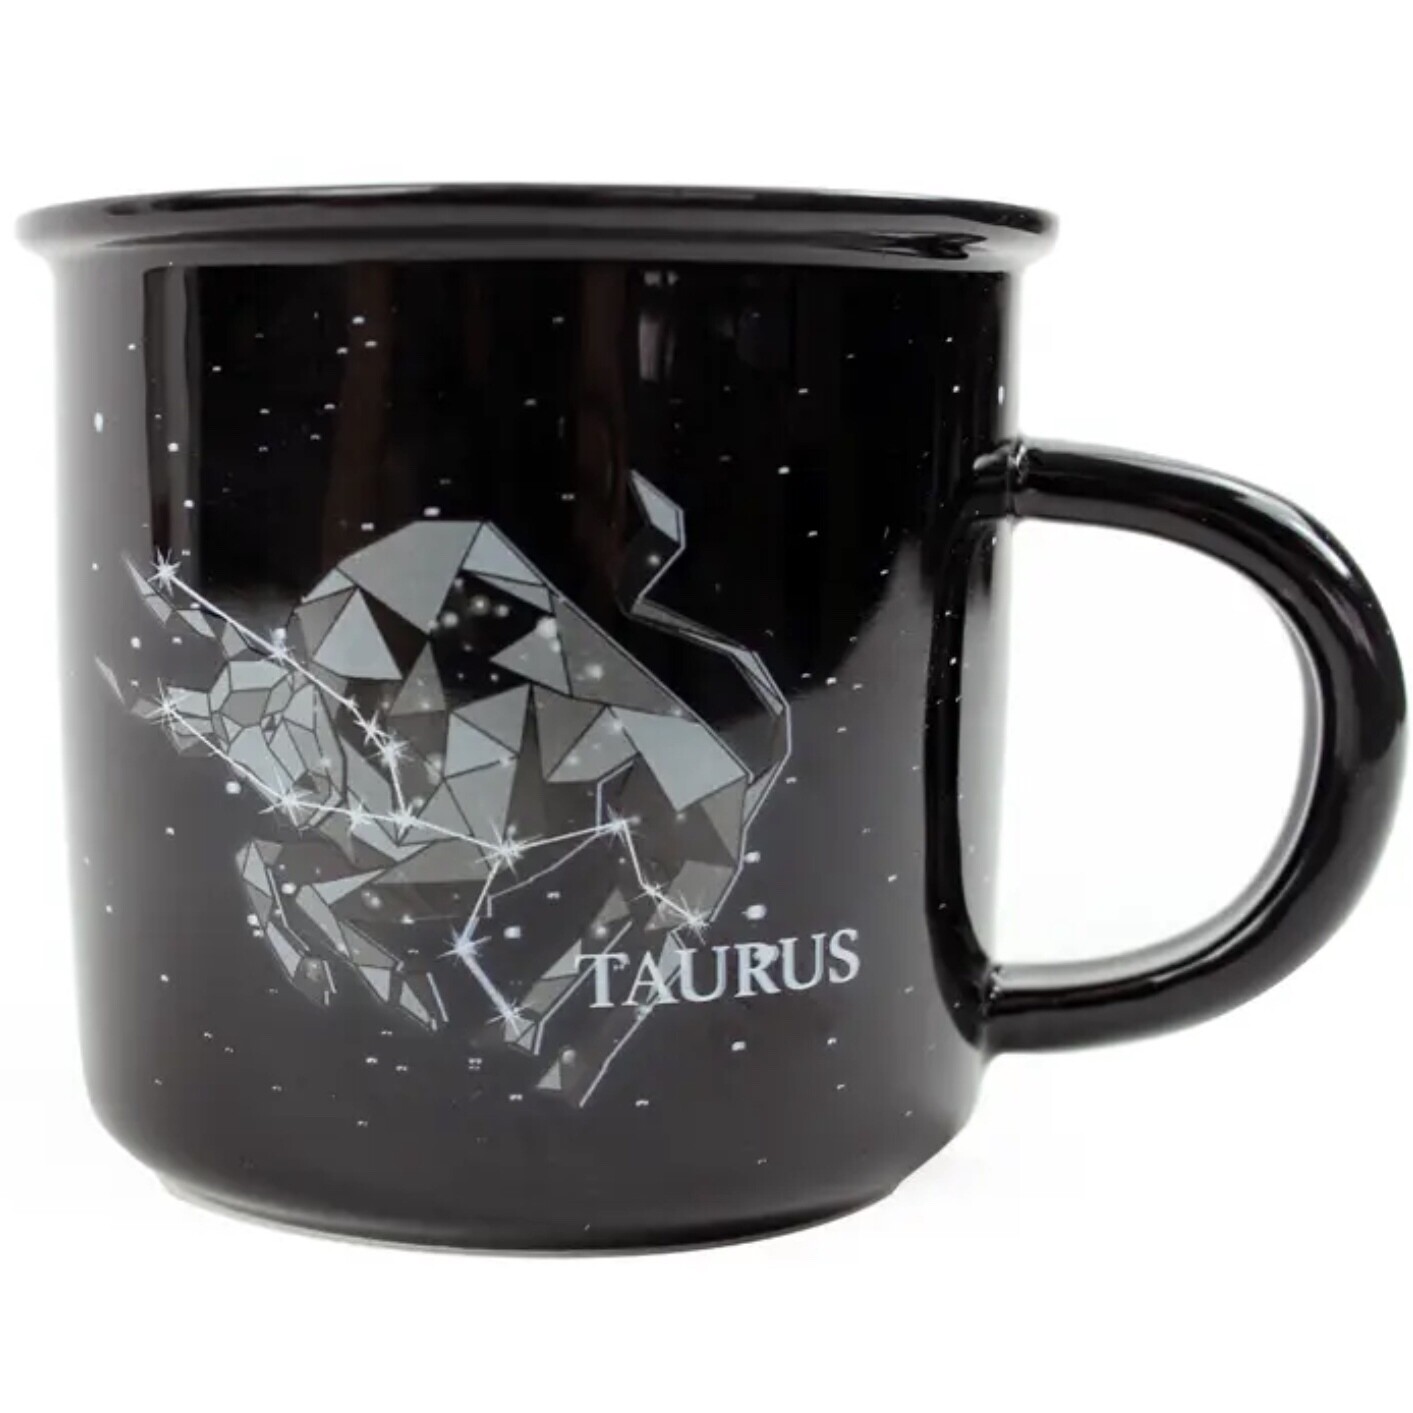 Taurus Constellation Ceramic Camp Mug